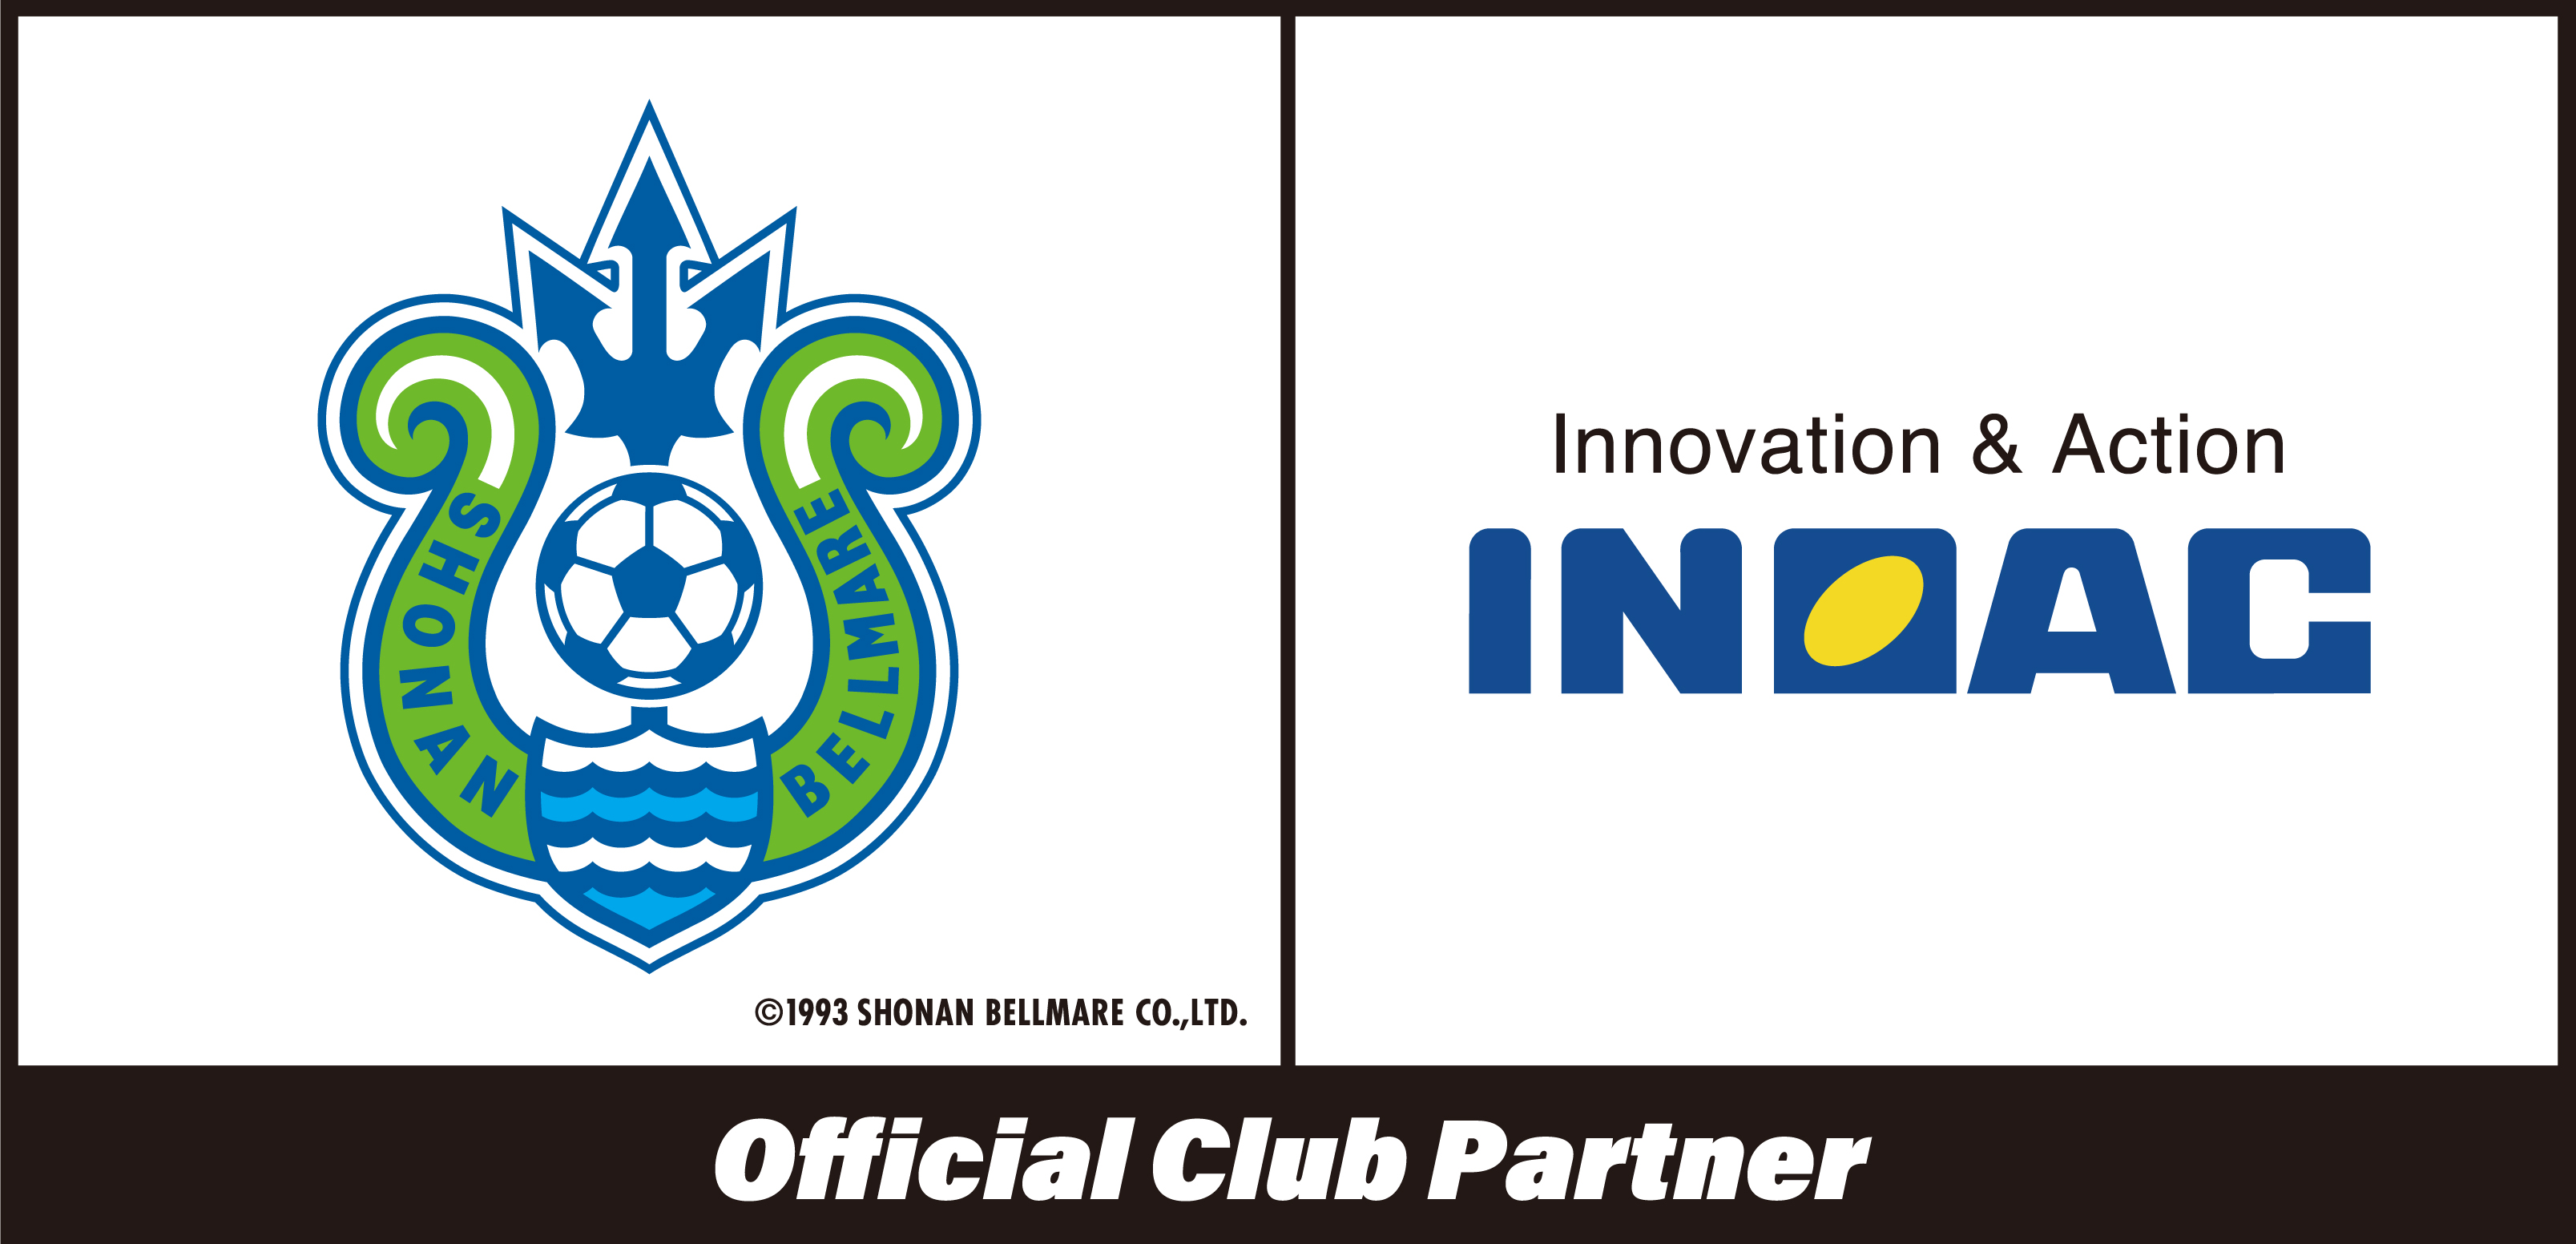 Jリーグクラブ 湘南ベルマーレ とのオフィシャルクラブパートナー契約締結のお知らせ 株式会社イノアックコーポレーションのプレスリリース